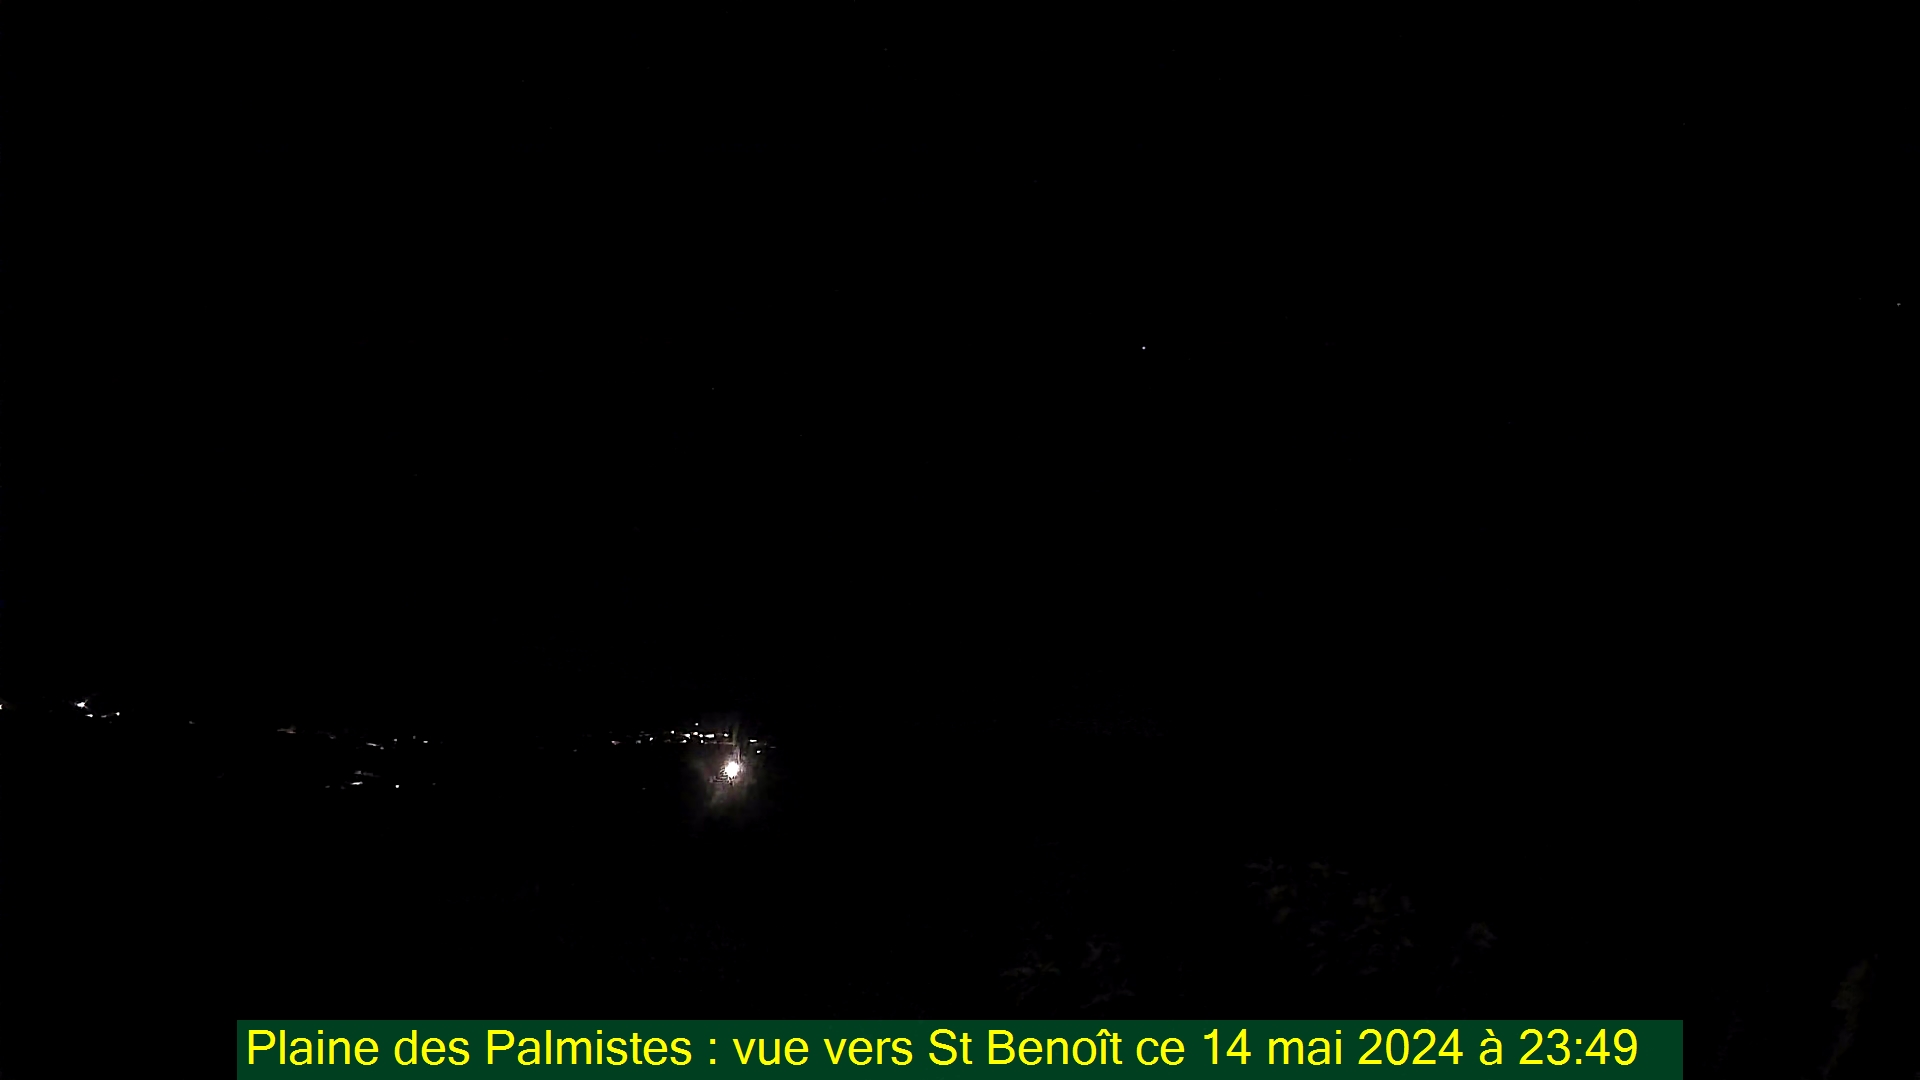 Saint-Denis (Réunion) Do. 23:50